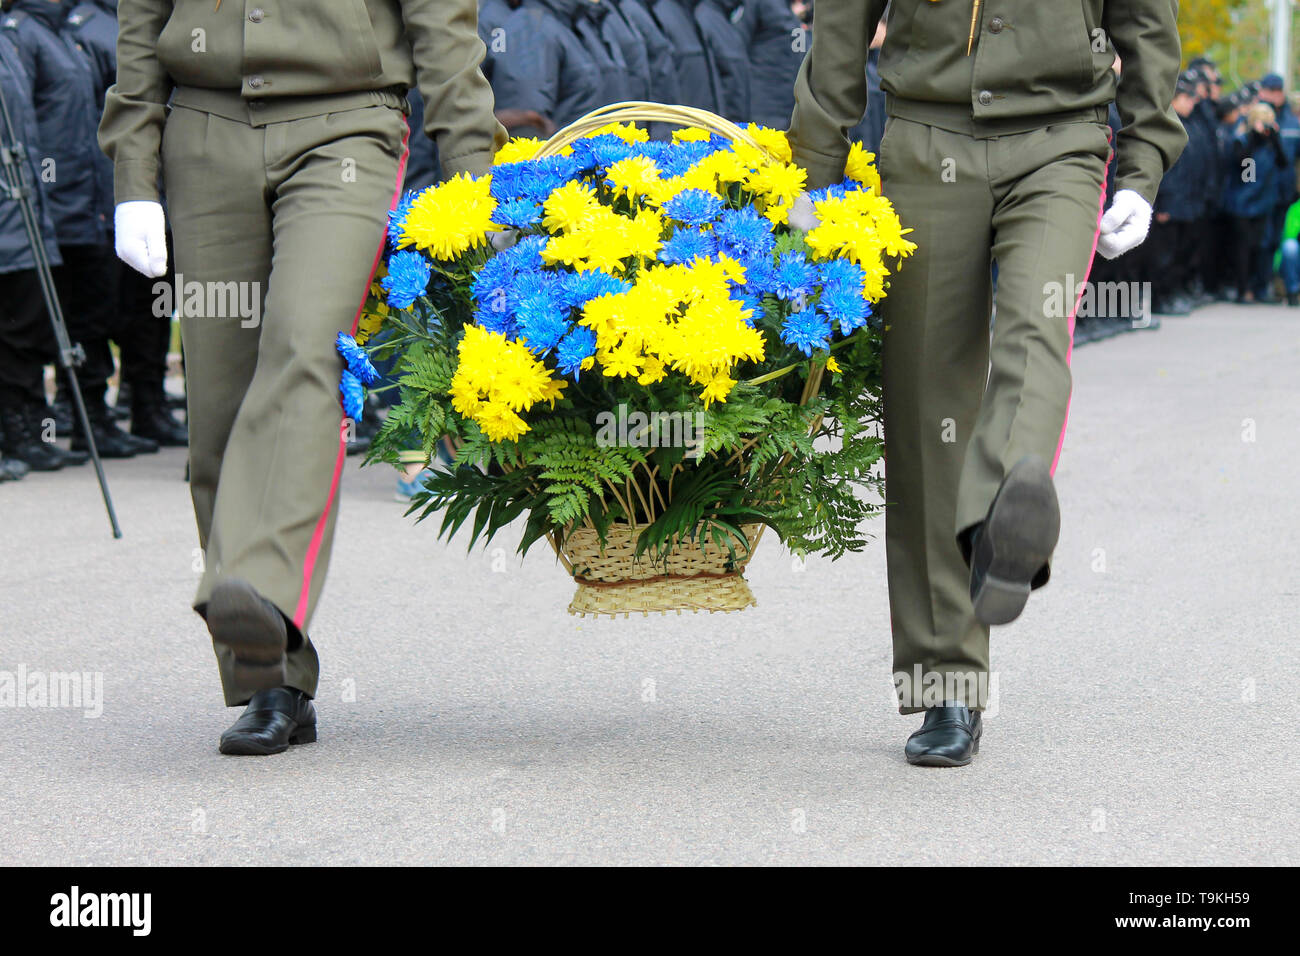 Soldaten der ukrainischen Armee tragen einen Korb mit Blumen in den Farben der Ukrainische Staat Flagge. Streitkräfte der Ukraine, Dnepropetrovsk Stockfoto